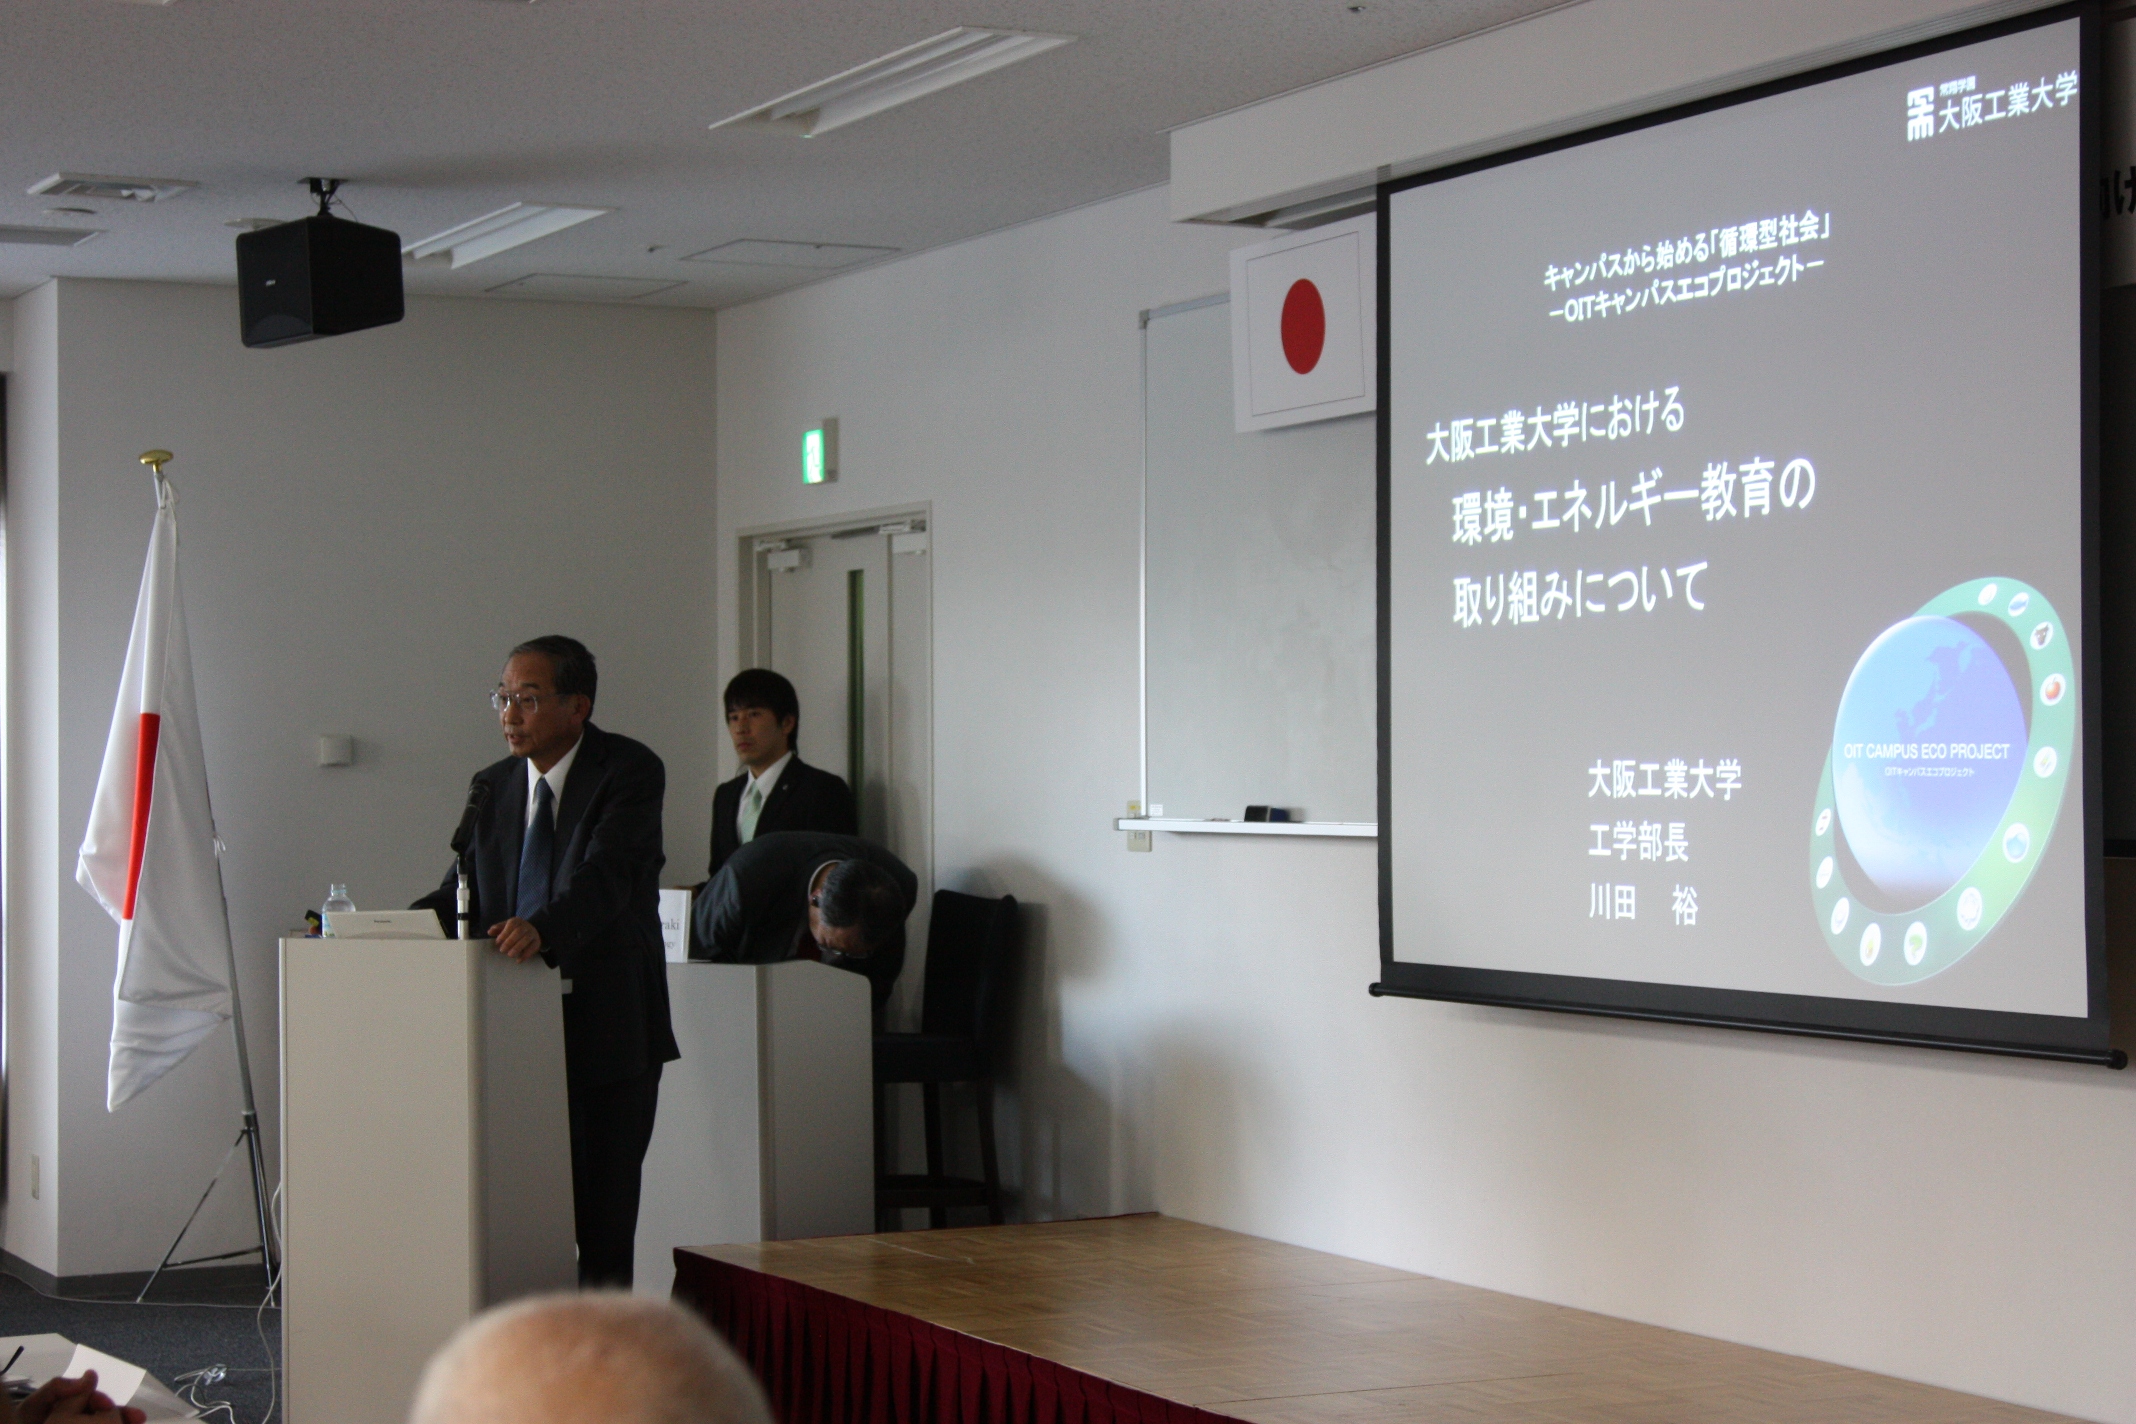 Prof. Kawata gives a presentation.